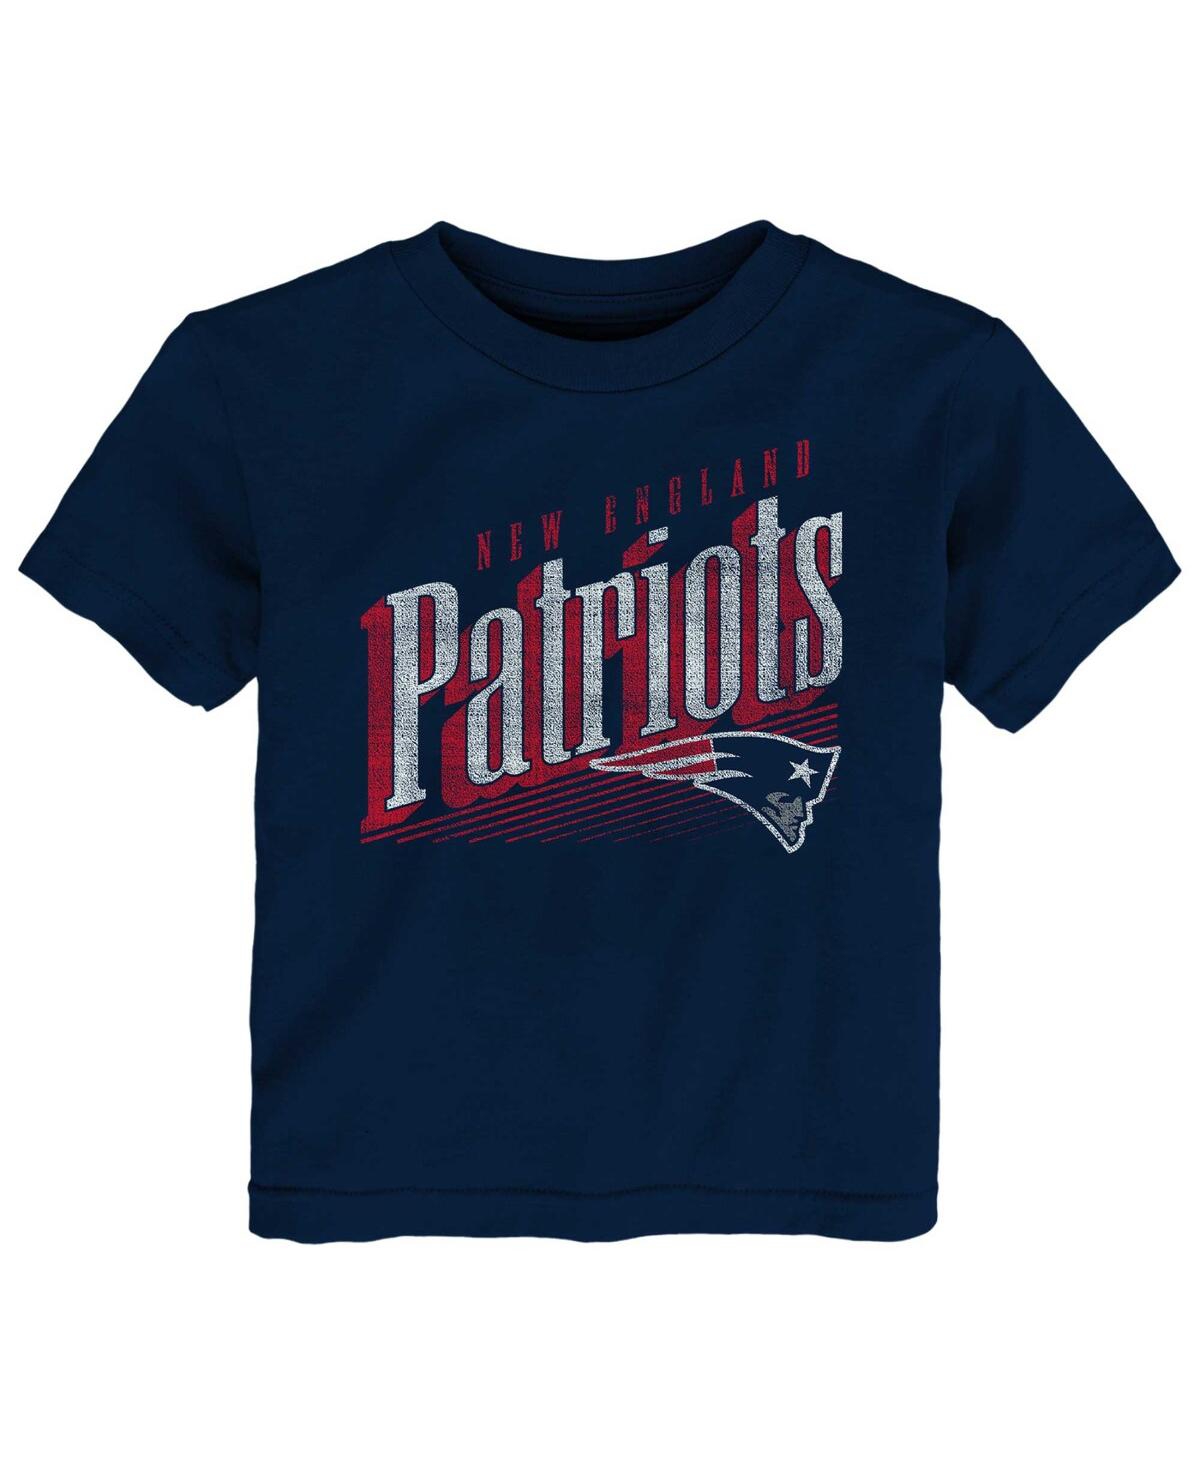 Shop Outerstuff Toddler Boys And Girls Navy New England Patriots Winning Streak T-shirt